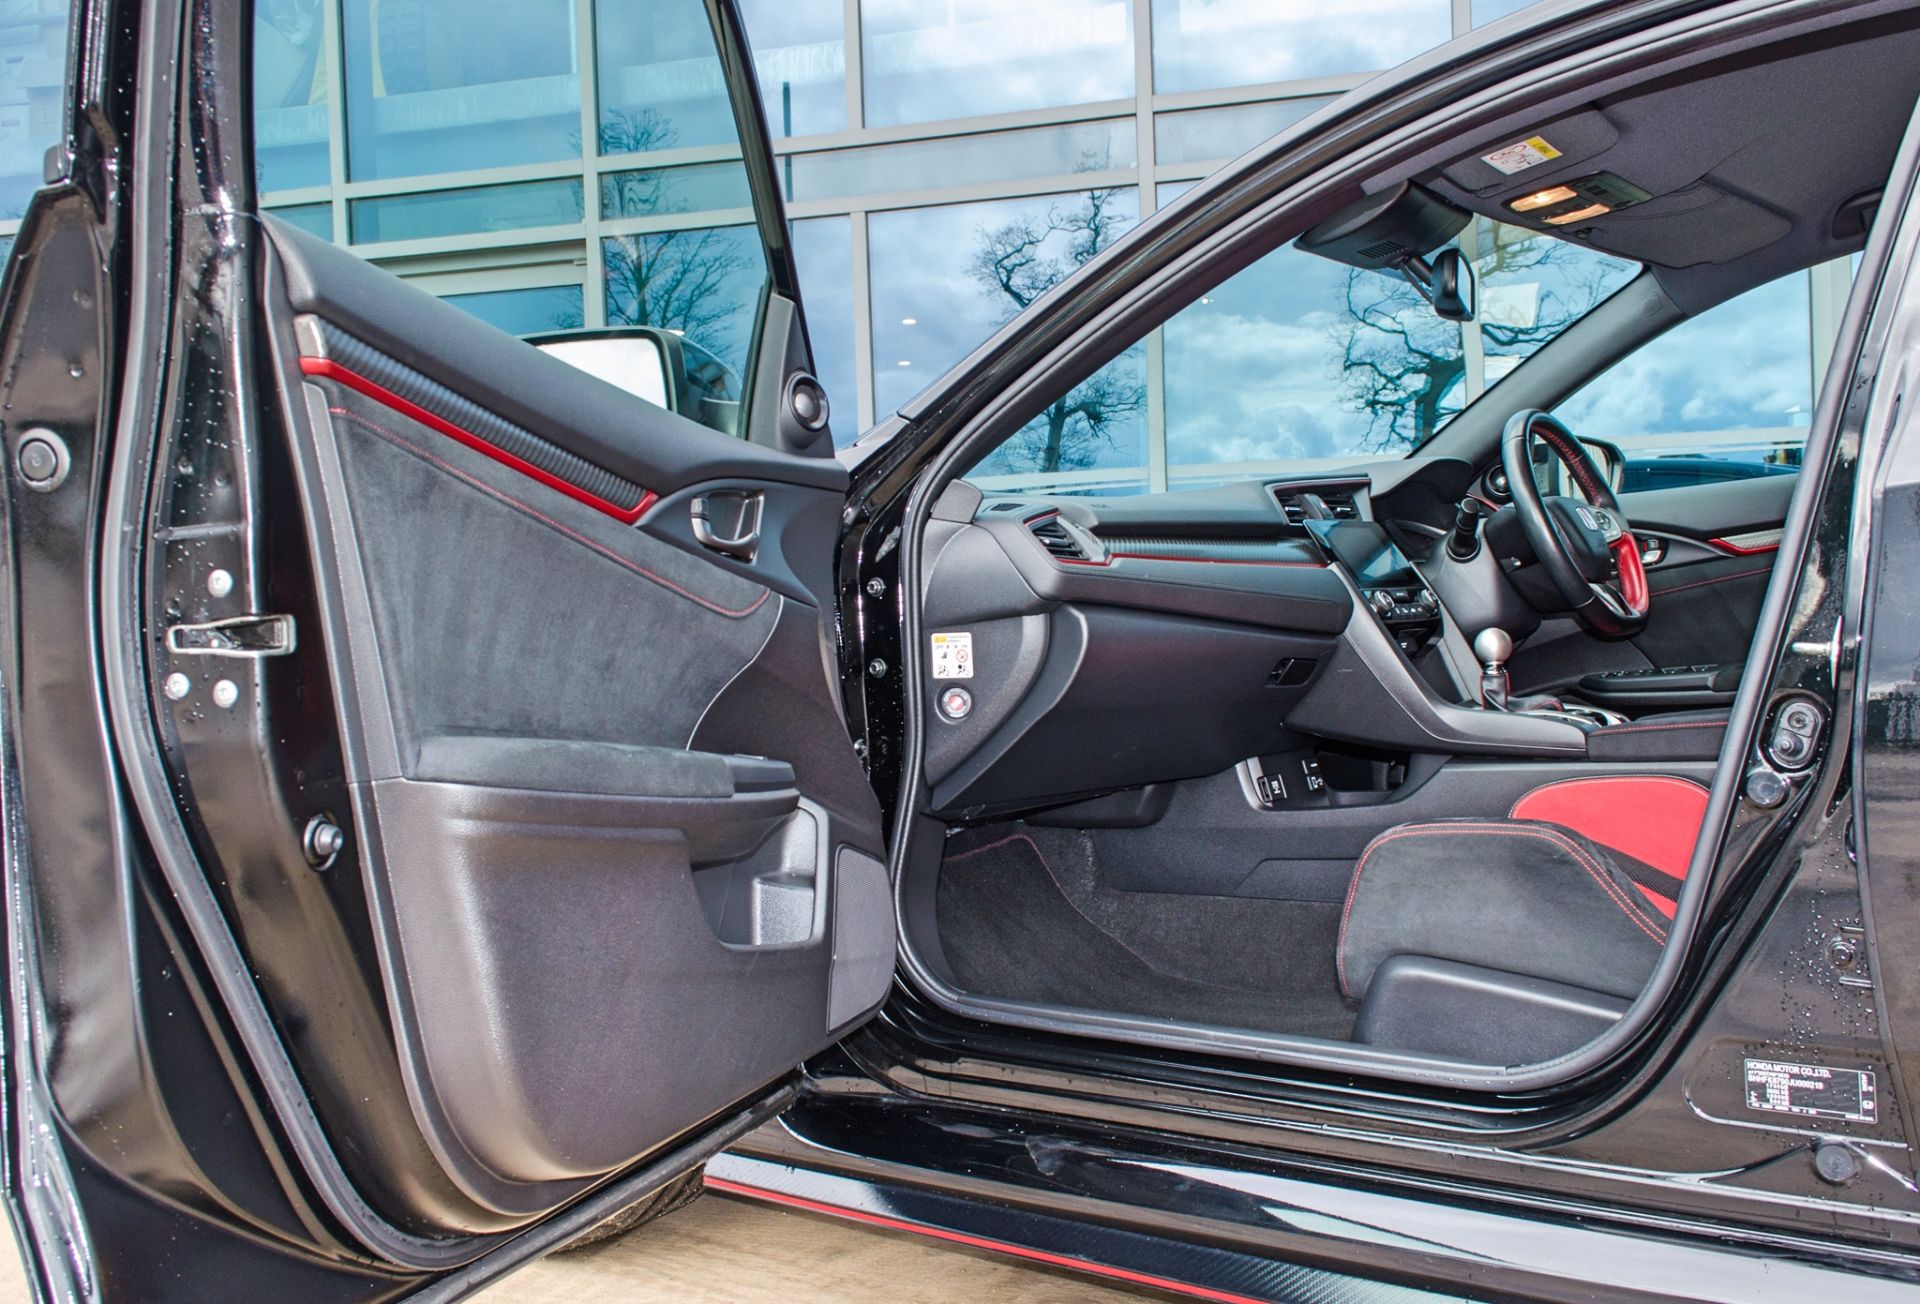 2018 Honda Civic GT Type R V-Tec 5 door hatchback Registration: DU68YHN Odometer: 16,429 Colour: - Image 36 of 54